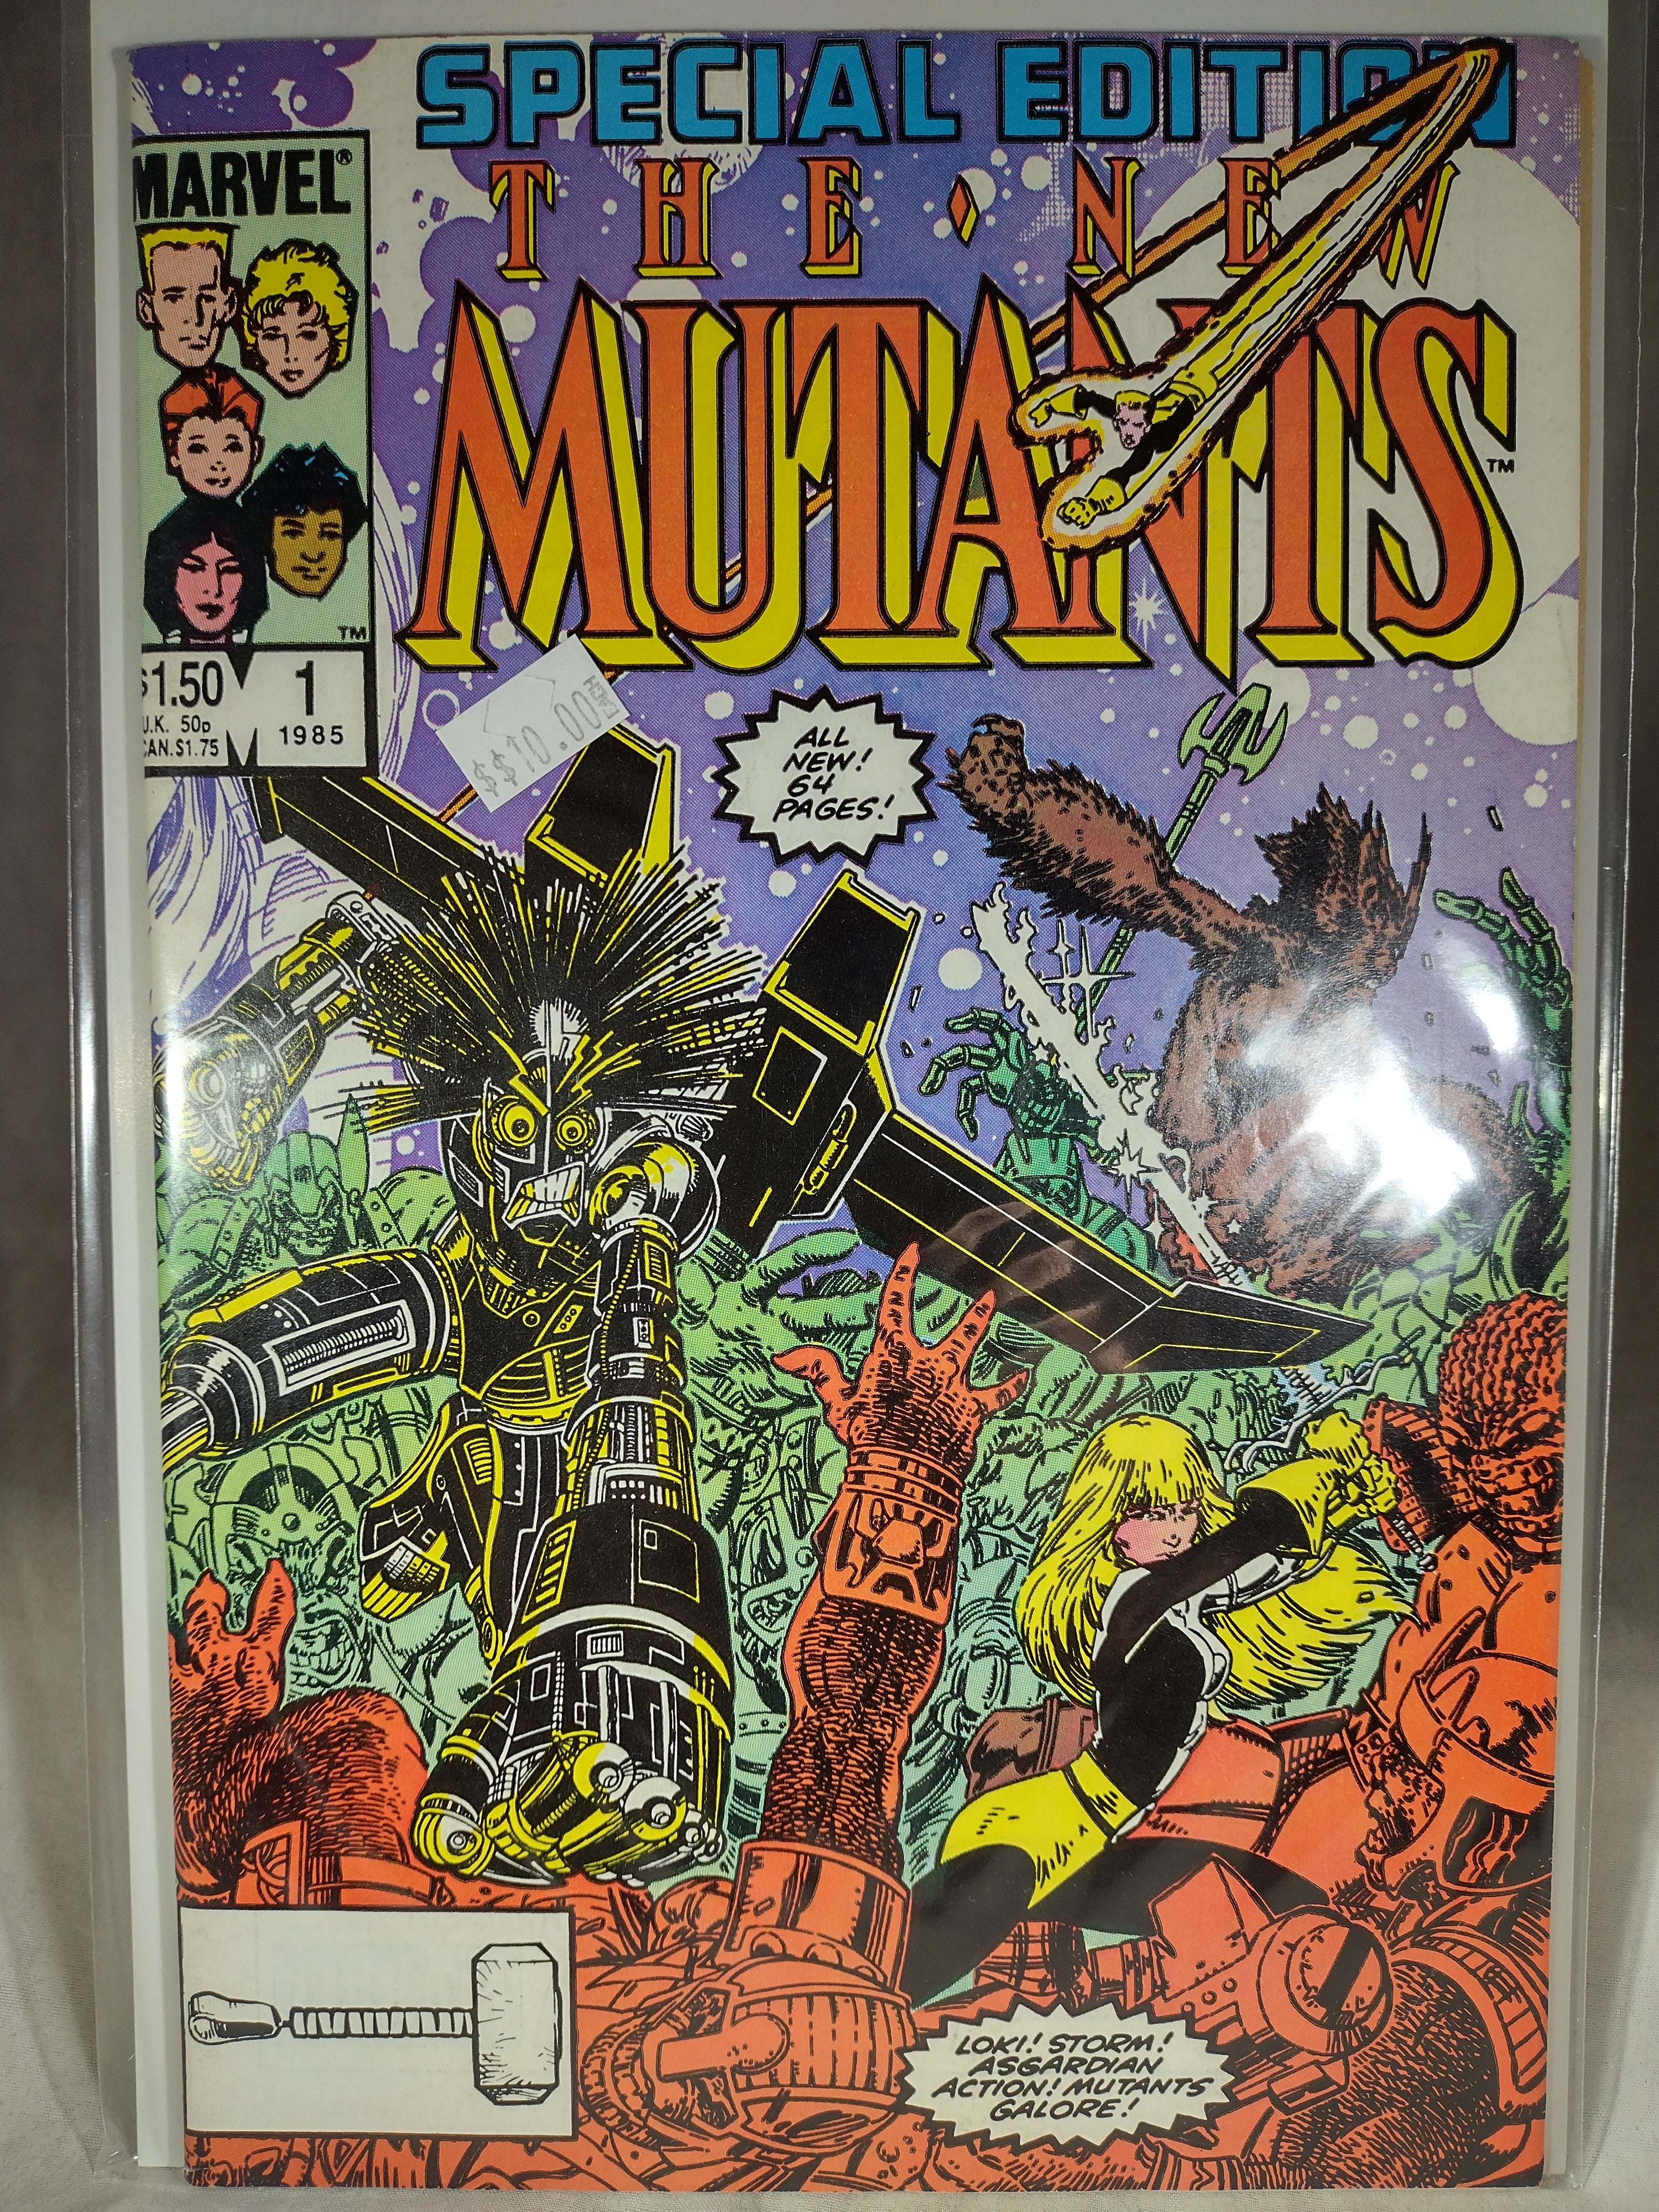 New Mutants (2019) #1, Comic Issues